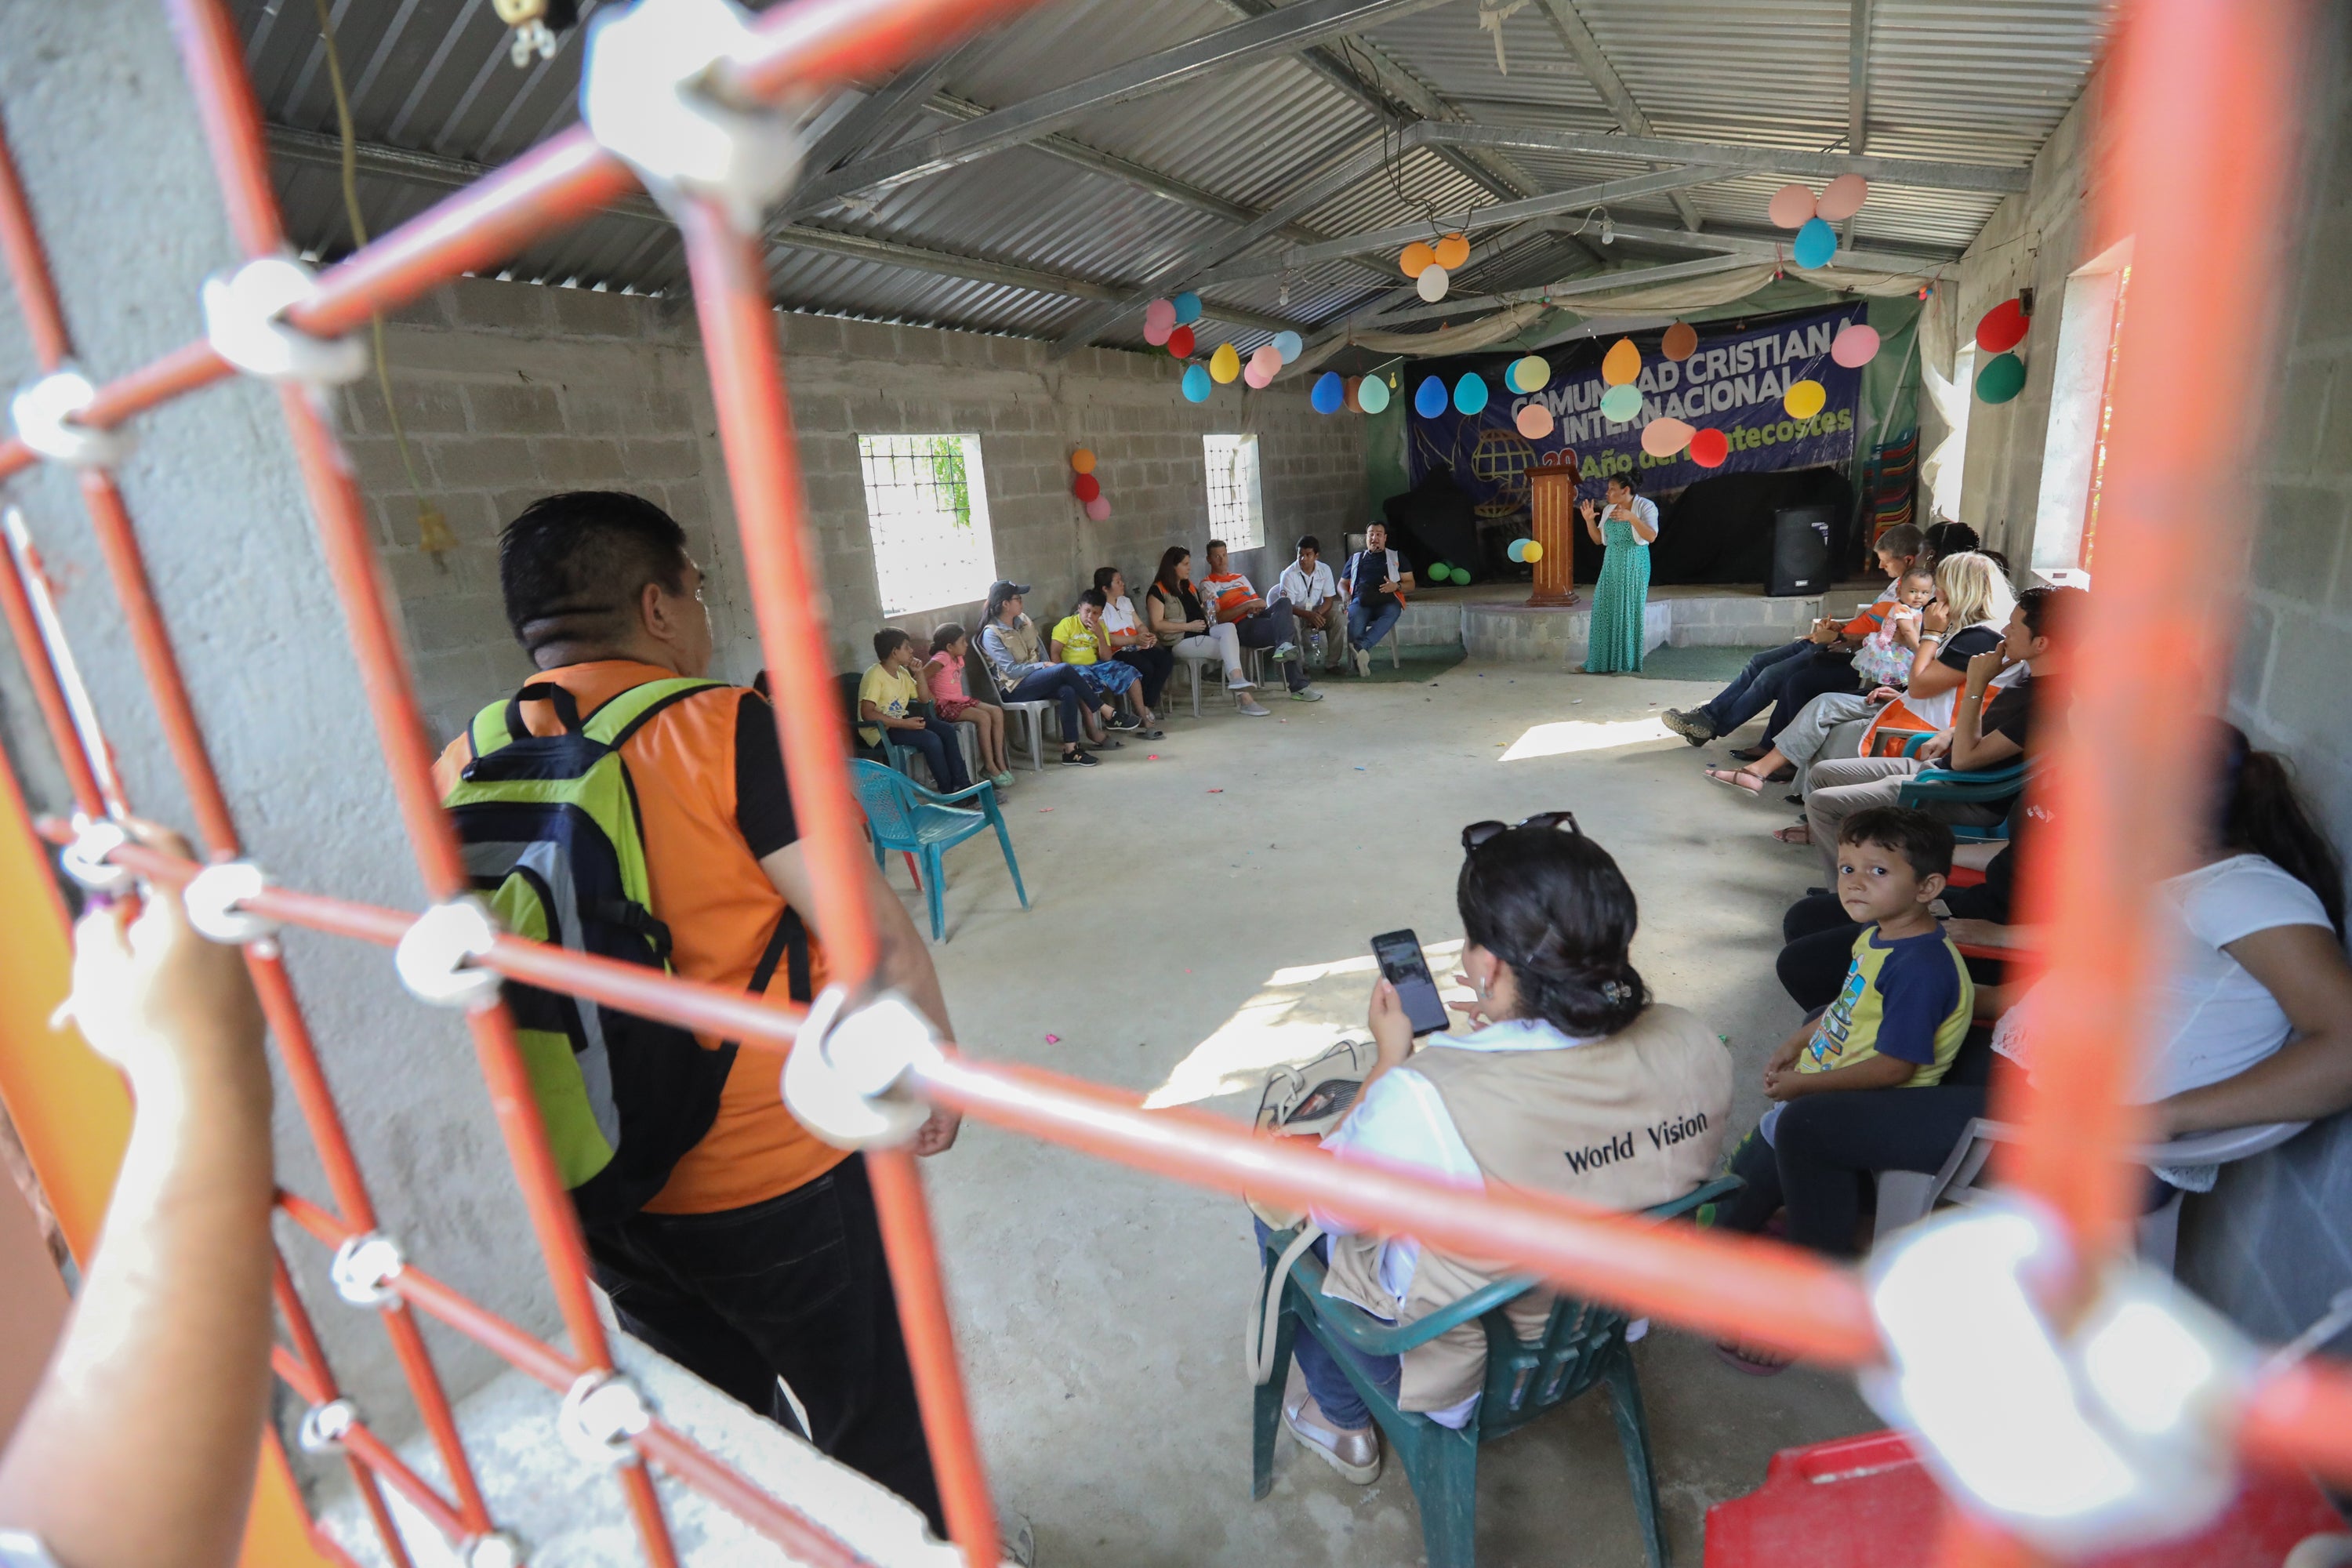 Lapset ja nuoret osallistuivat rauhan kerhoon lapsiystävällisissä tiloissamme San Pedro Sulassa, Hondurasissa. San Pedro Sula on tunnettu jengiväkivallasta ja rikoksista.  Asuinalueella ei ole valtionhallinnon tukea. Lapsia värvätään rikollisjengien toimintaan mukaan, ja siksi lastensuojeluhankkeet ovat erityisen tärkeitä.  